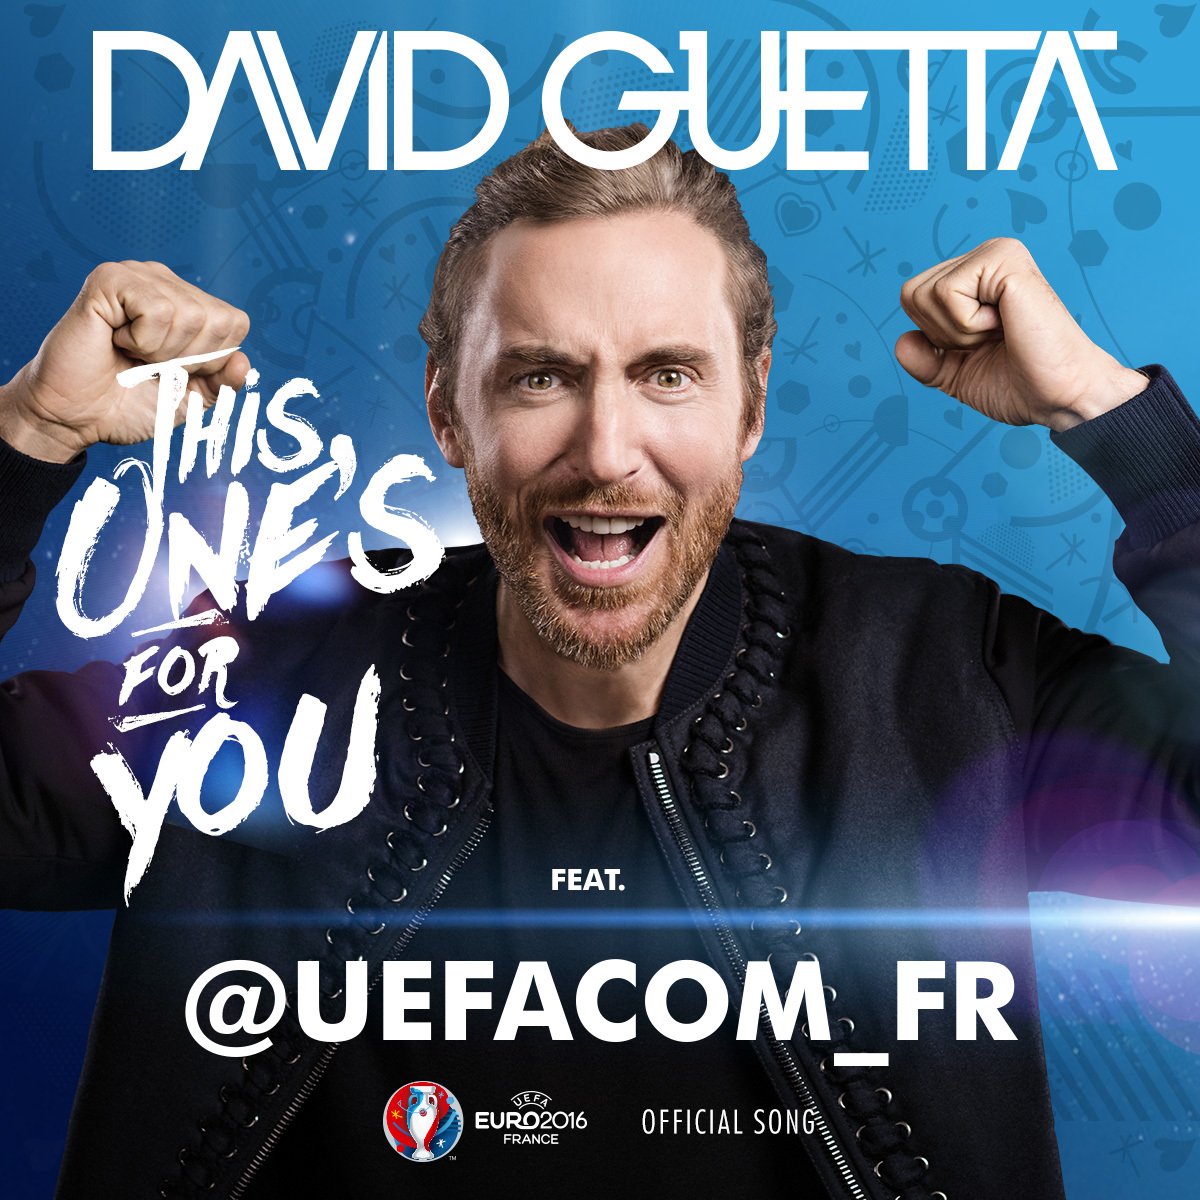 RT @UEFAcom_fr: Top! Je viens d'enregistrer l'hymne de l’@EURO2016 avec @DavidGuetta
À toi ► https://t.co/UJrVPeCukx
#thisonesforyou https:…